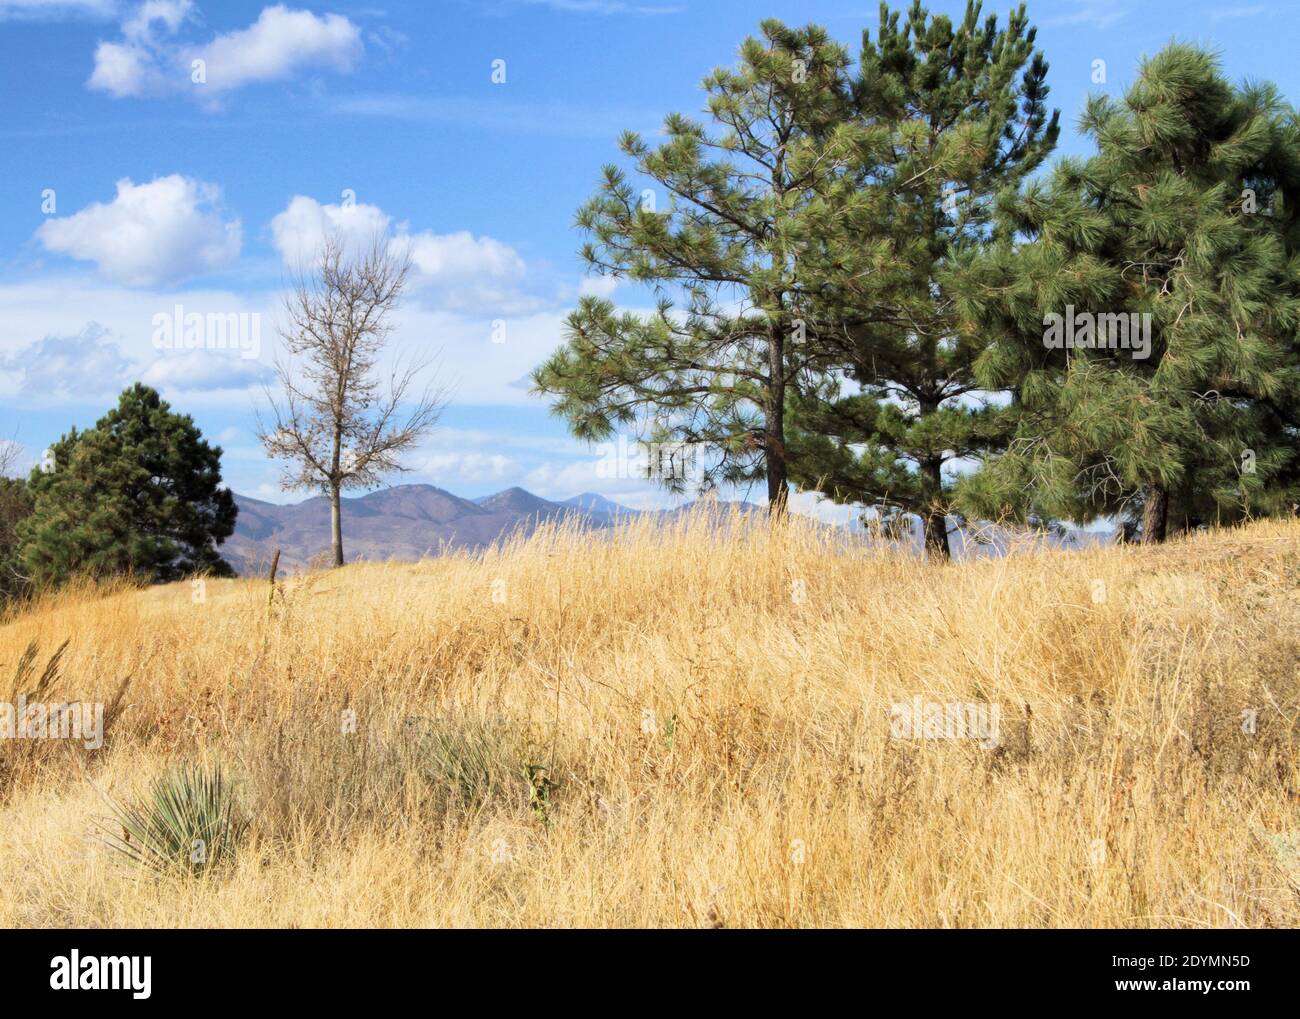 La hierba otoñal y los árboles perennes se encuentran en el fondo de las distantes Montañas Rocosas en Denver. Foto de stock